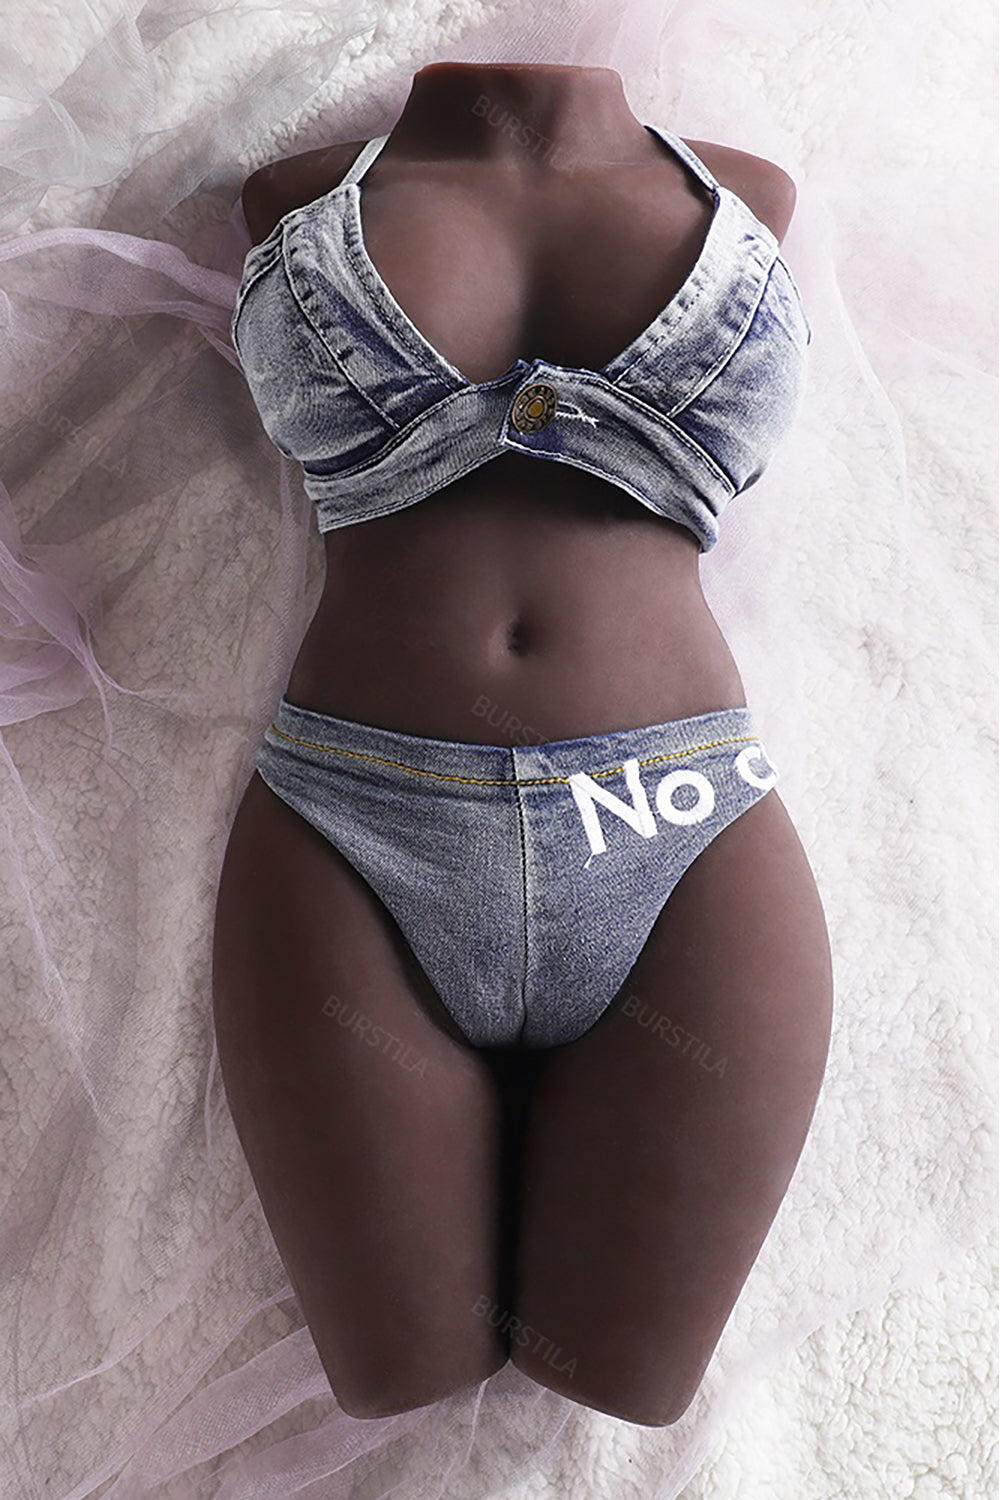 EU Stock - TPE 21 lbs/9.5kg Big Boobs Best Women Black Sex Doll Torso For Men